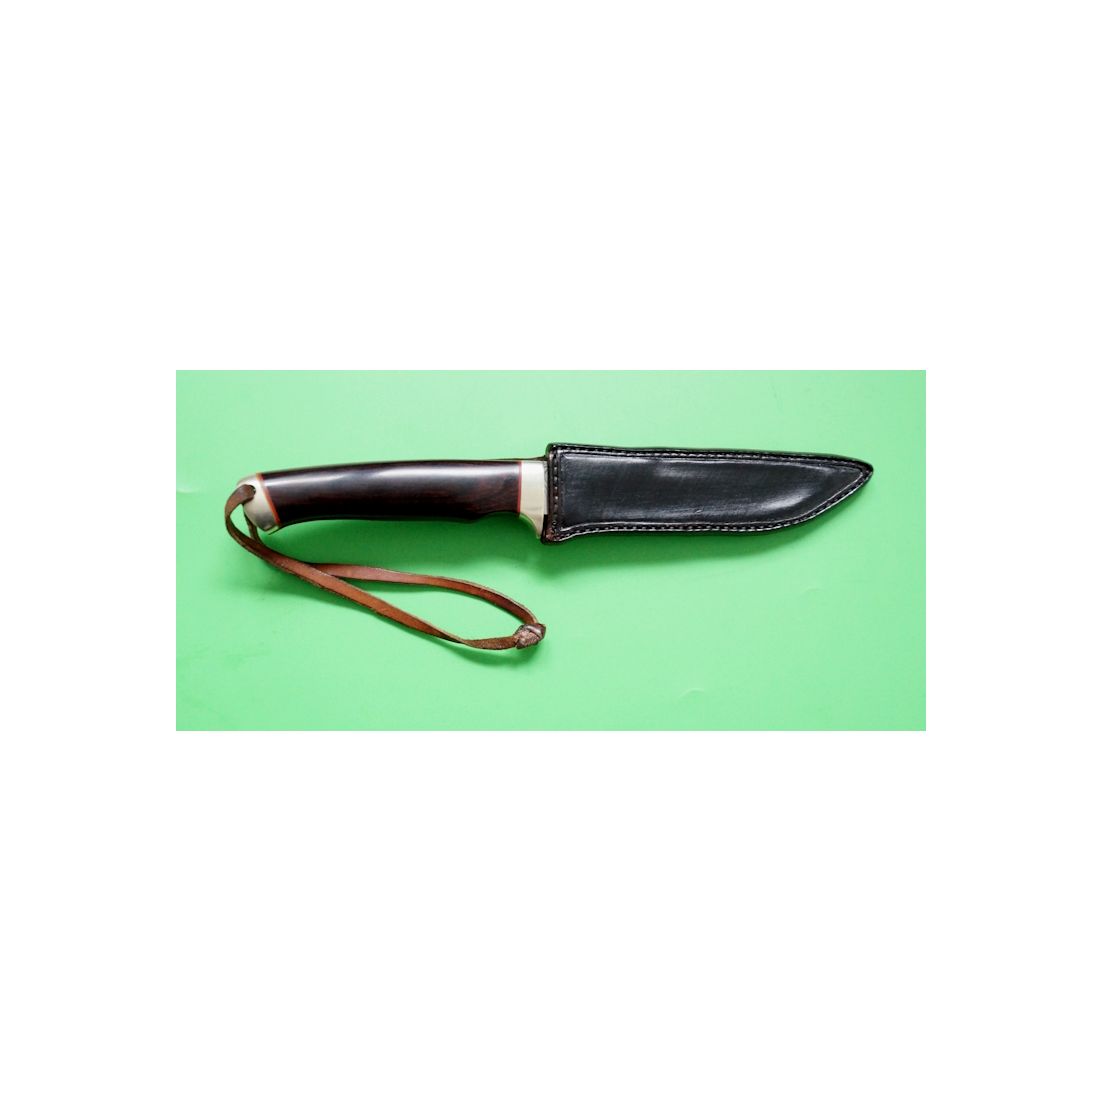 Custom Knife - Sammlermesser von Gerd Haats mit Damastklinge